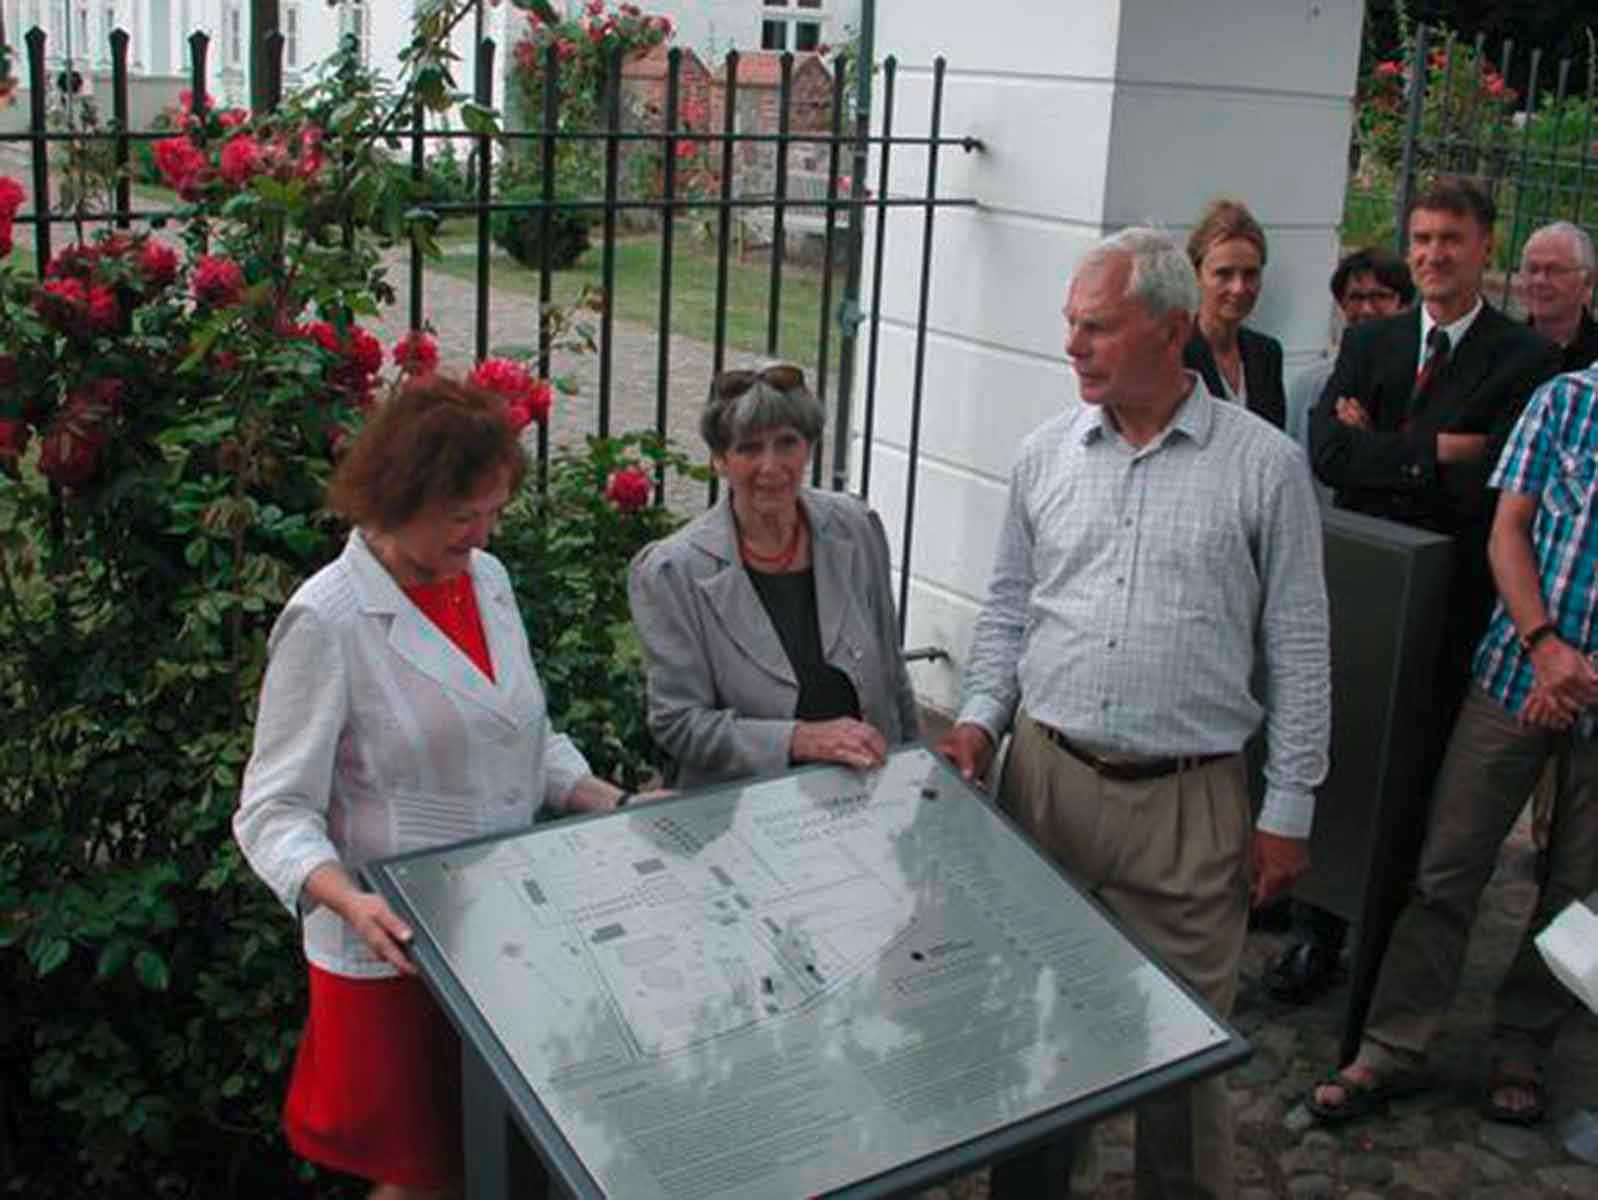 Abb.6: Streu, Lkr. Vorpommern- Rügen, Ehepaar Reimann und K. Kassner, MdB, bei der Informationstafel, 2014 